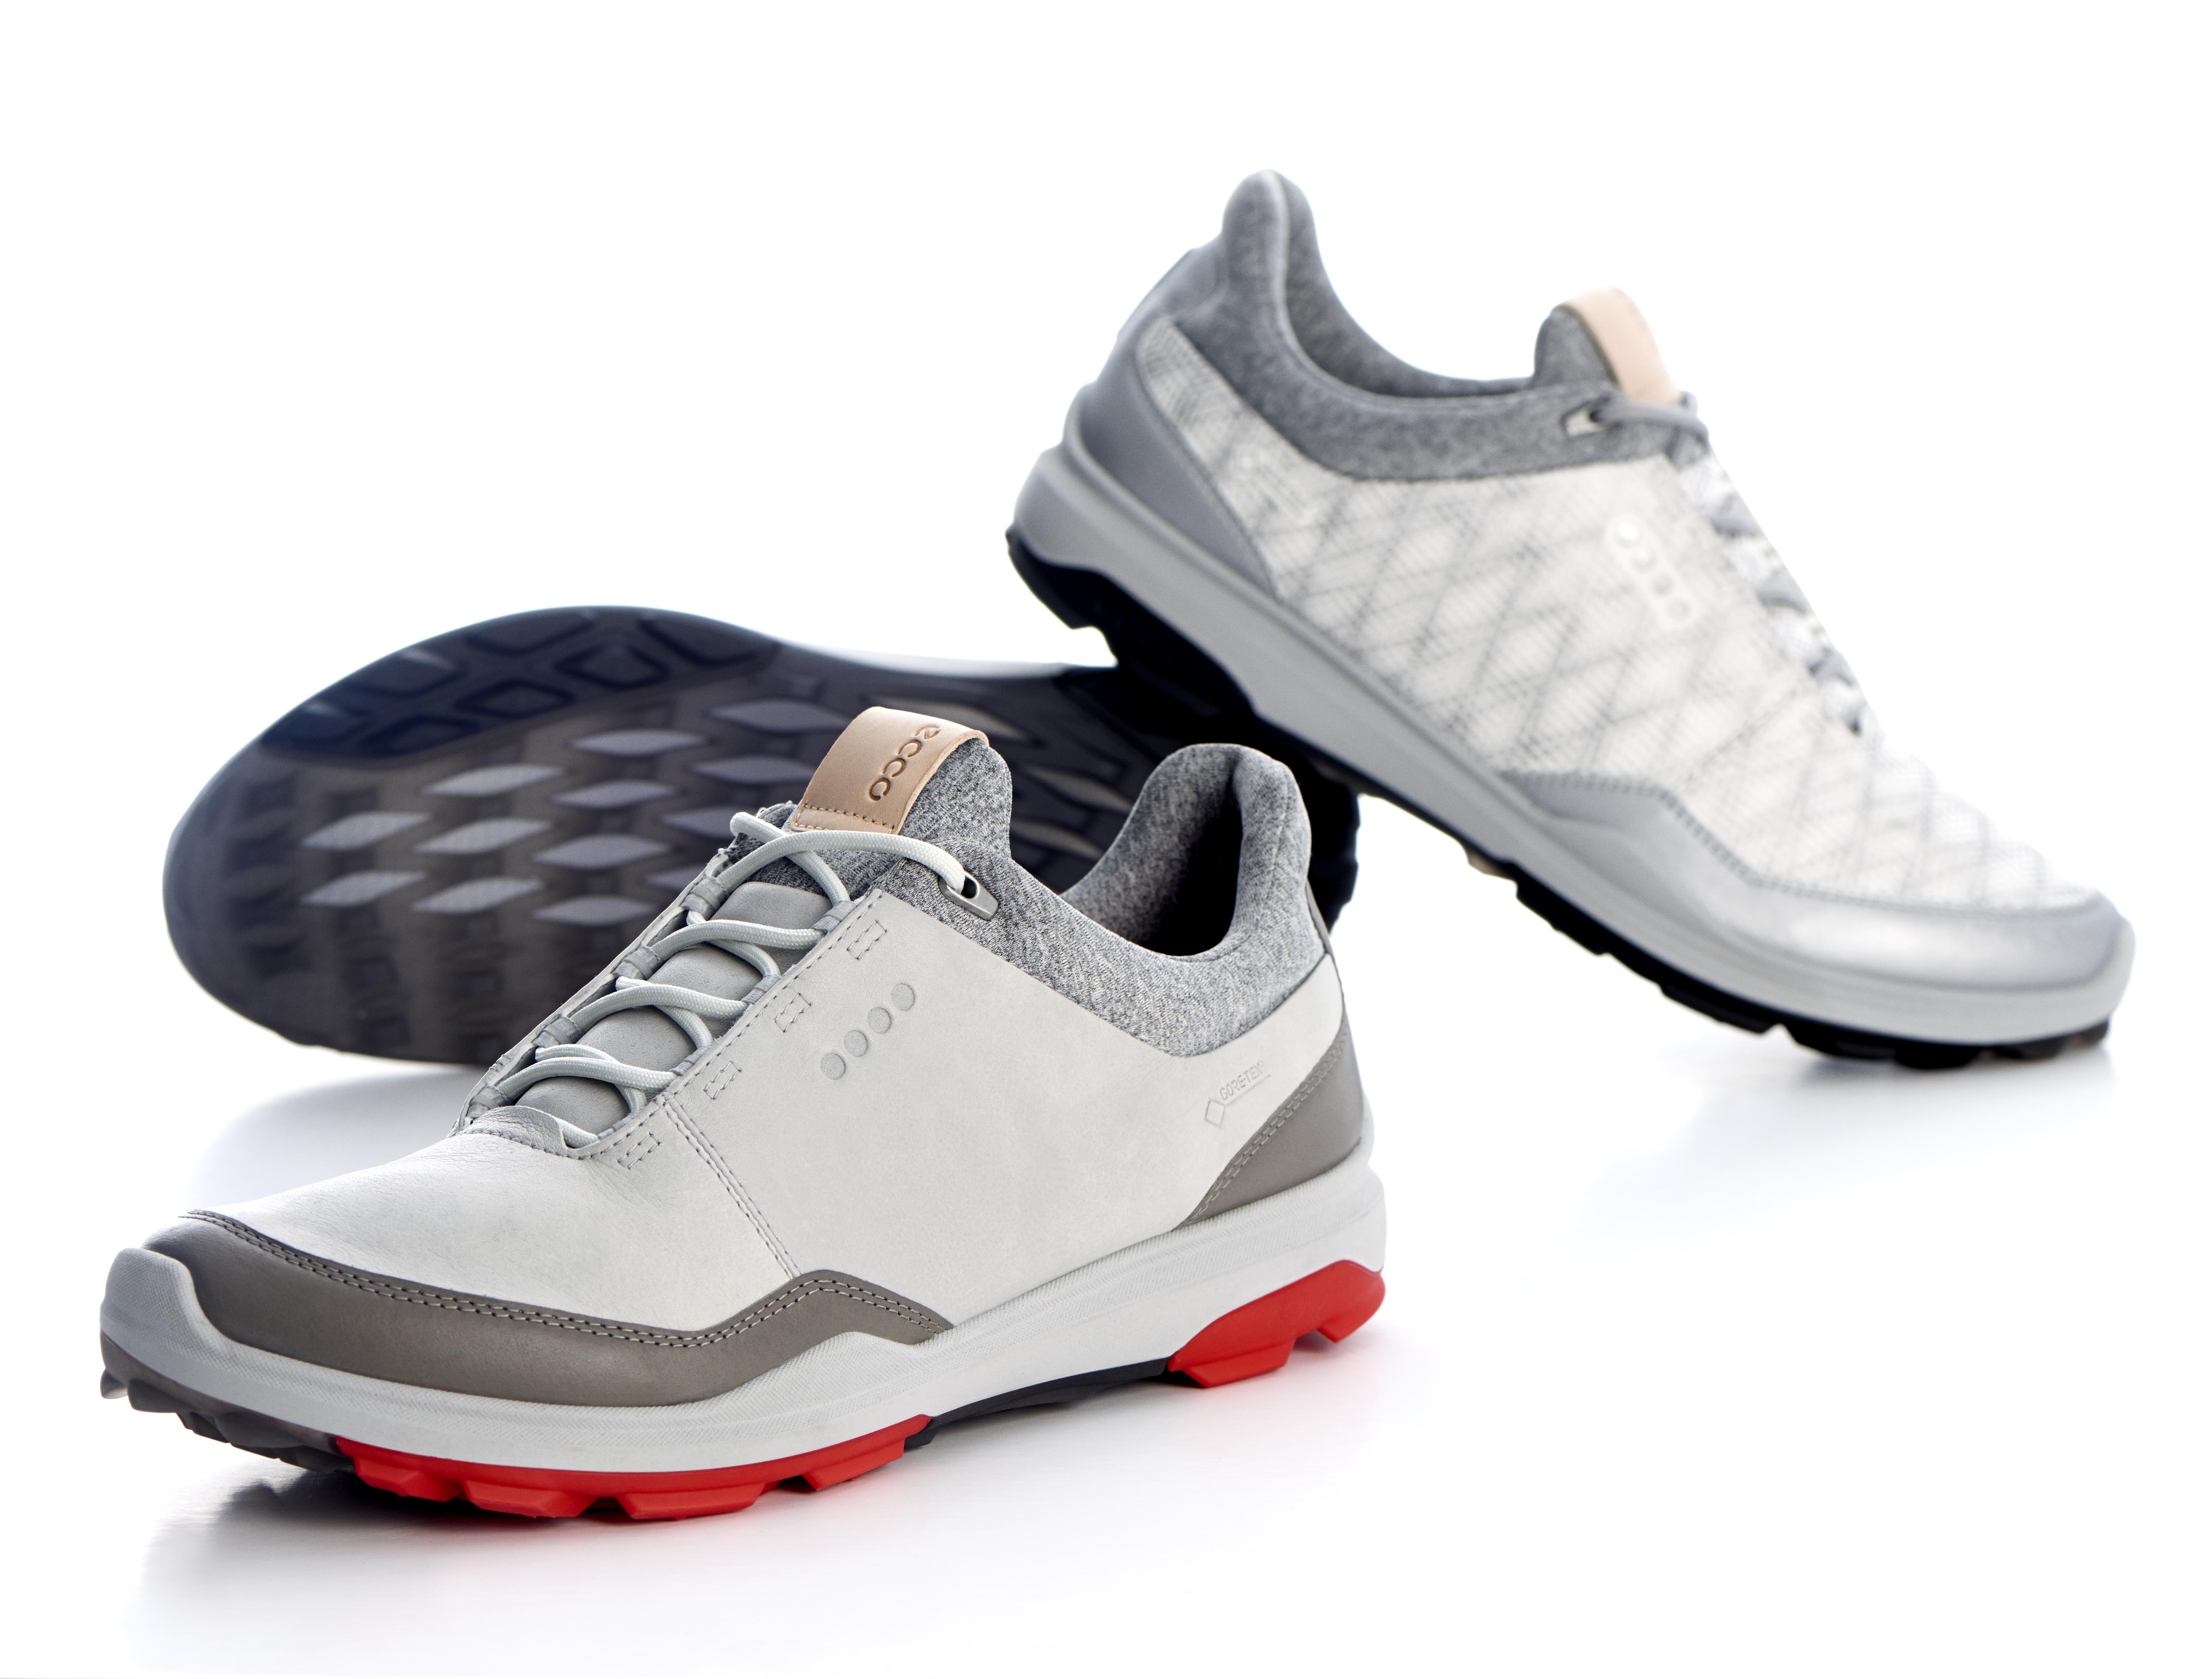 ECCO men's Biom 3 golf shoe | GolfMagic